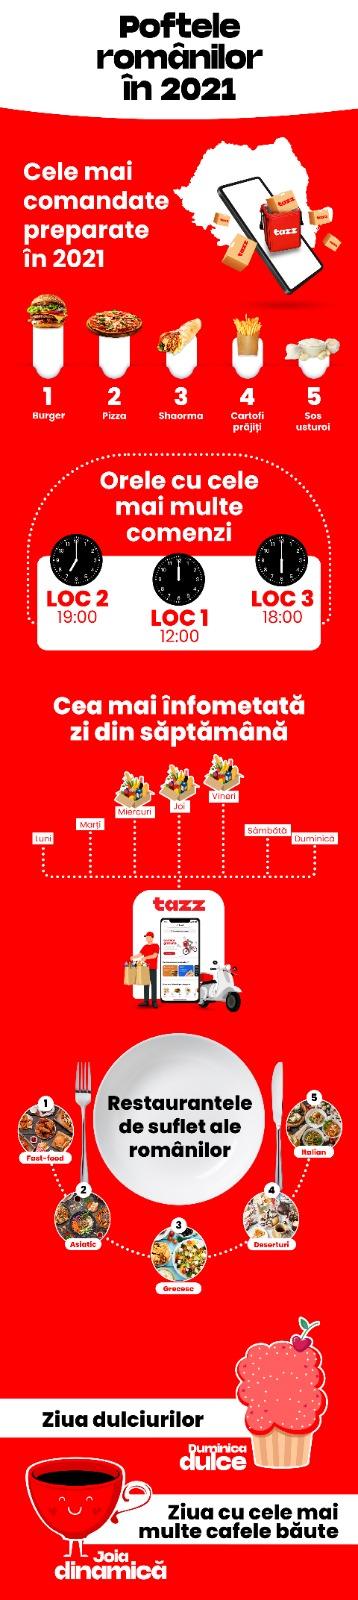 (P) Analiză Tazz: Preferințele și obiceiurile de consum ale românilor τον anul 2021. Anul Burgerului